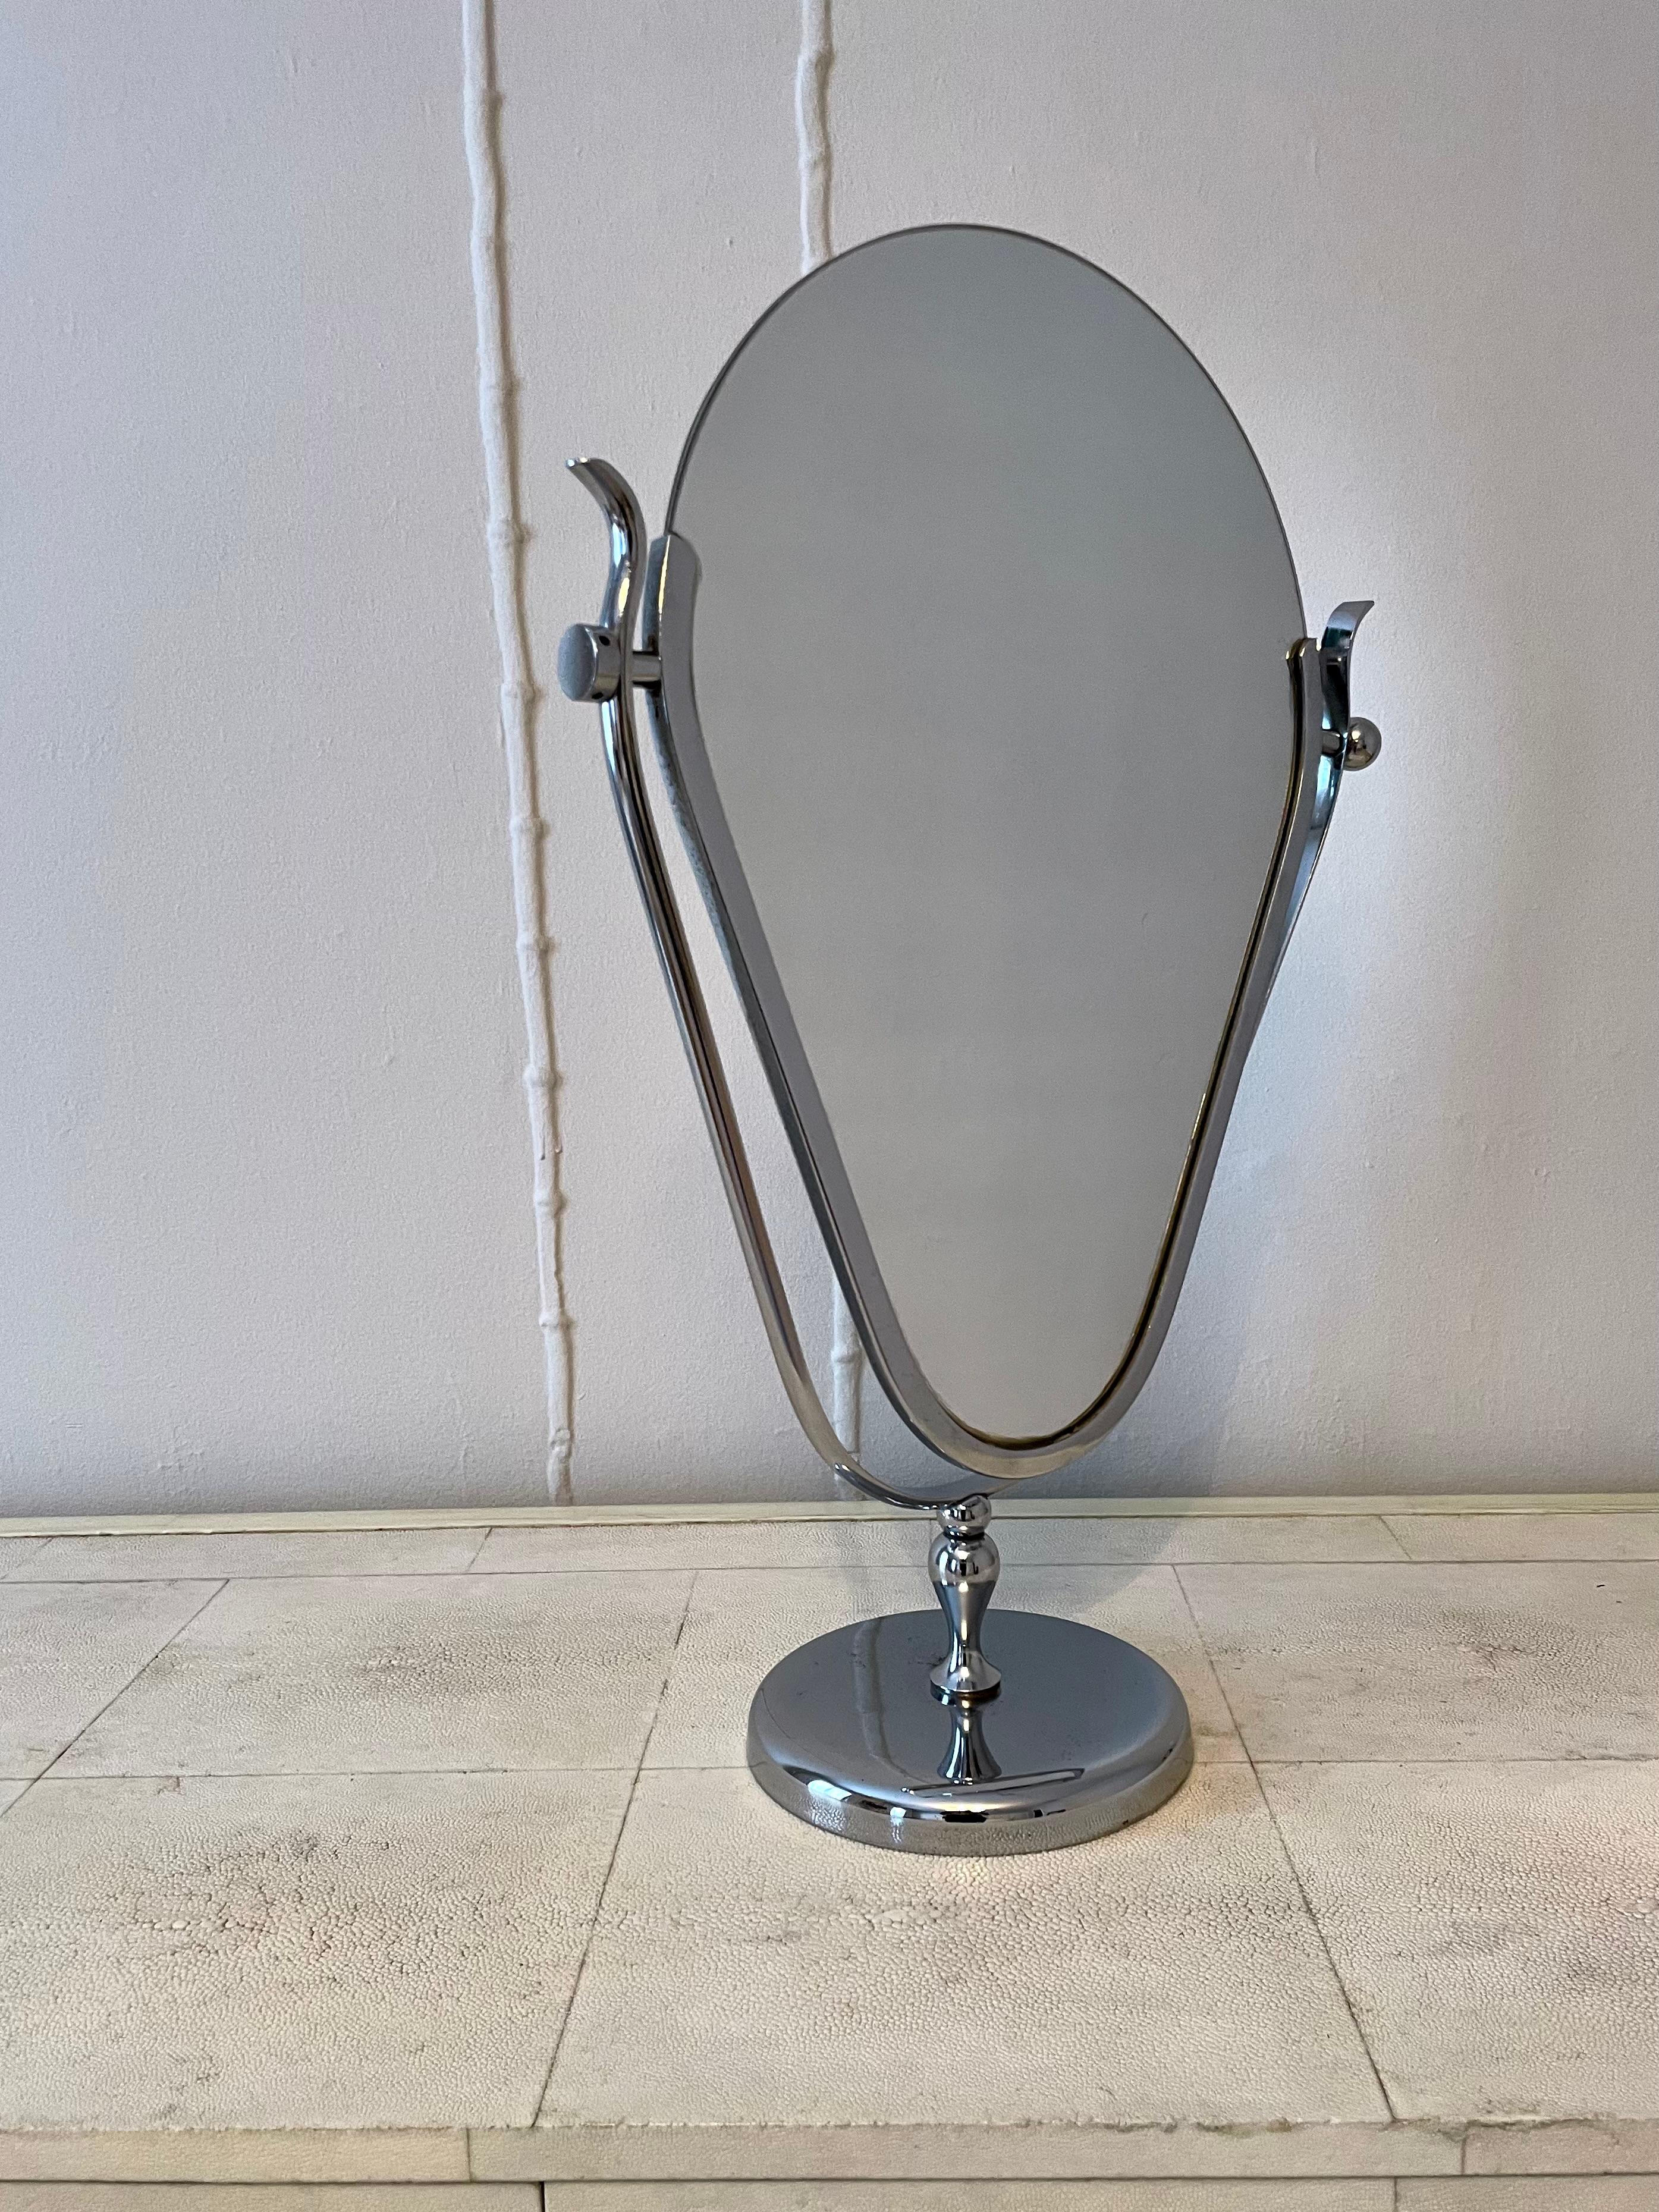 Miroir de table dans le style de Charles Hollis Jones, parfait pour une vanité. L'un des côtés comporte une attache en forme de boule tandis que l'autre est un disque, une touche unique qui donne une légère valeur wabi-sabi à la pièce. 


